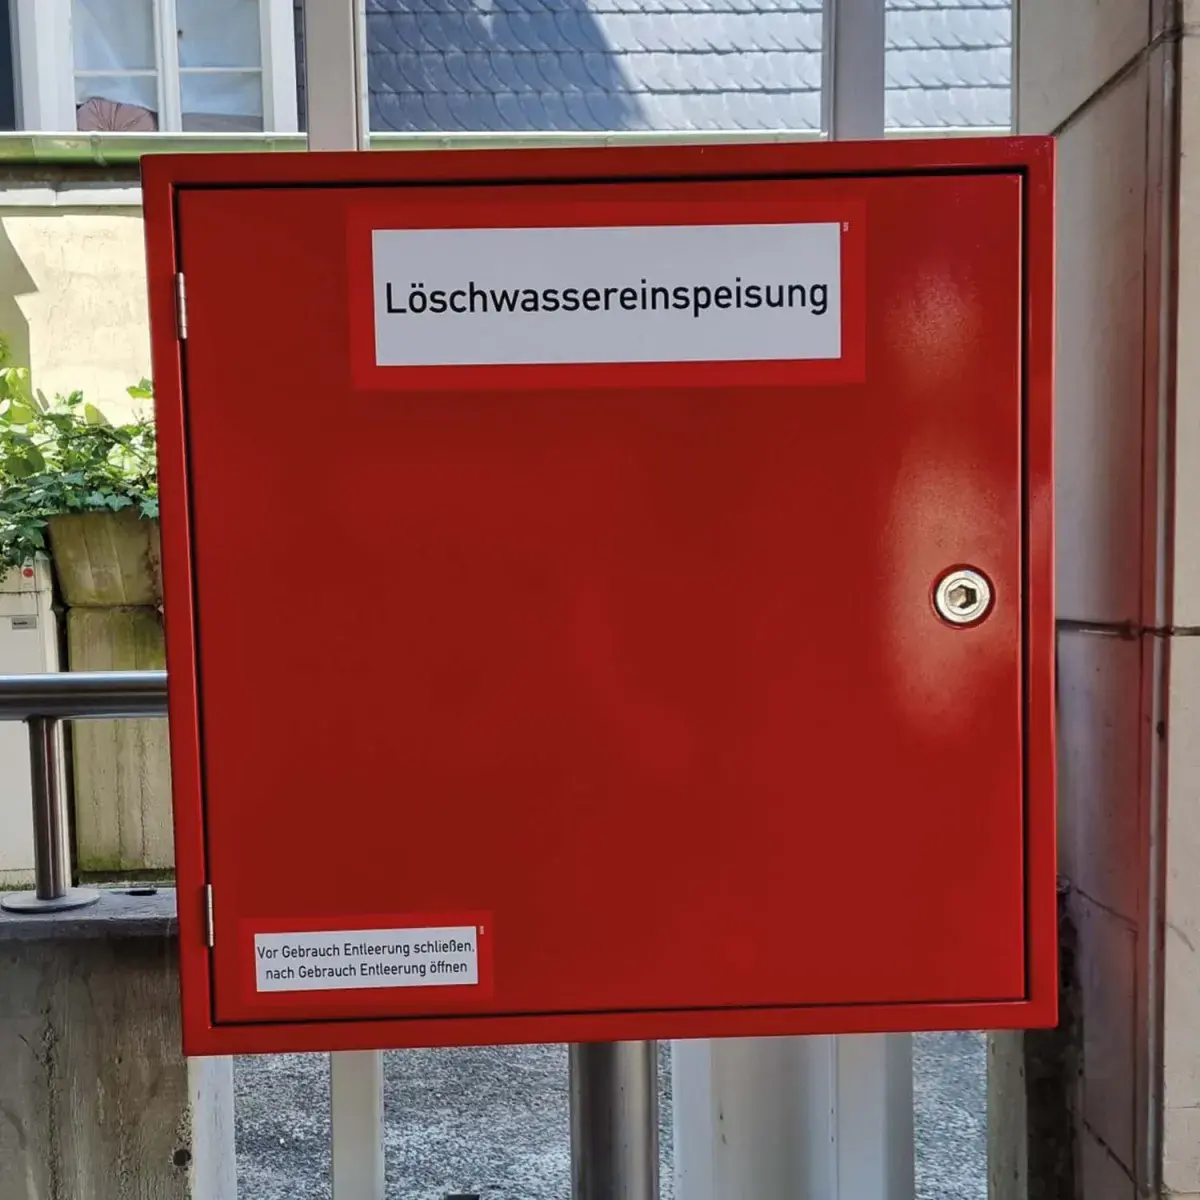 Löschwassertechnik München-CWS Fire Safety